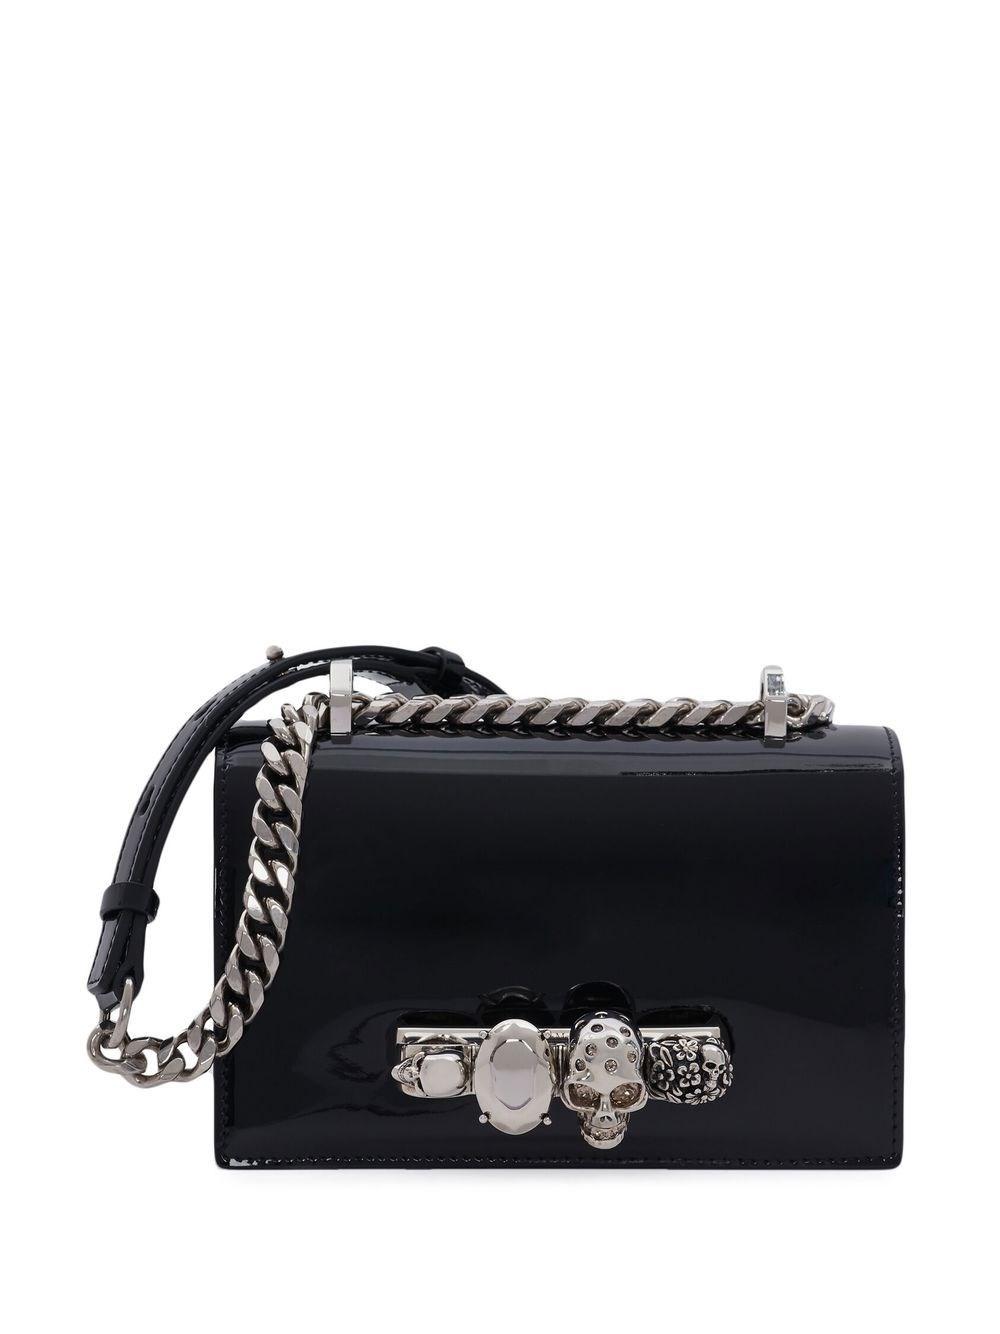 Borsa jewelled satchelAlexander McQueen in Pelle di colore Nero Donna Borse da Borsette e borse satchel da 10% di sconto 